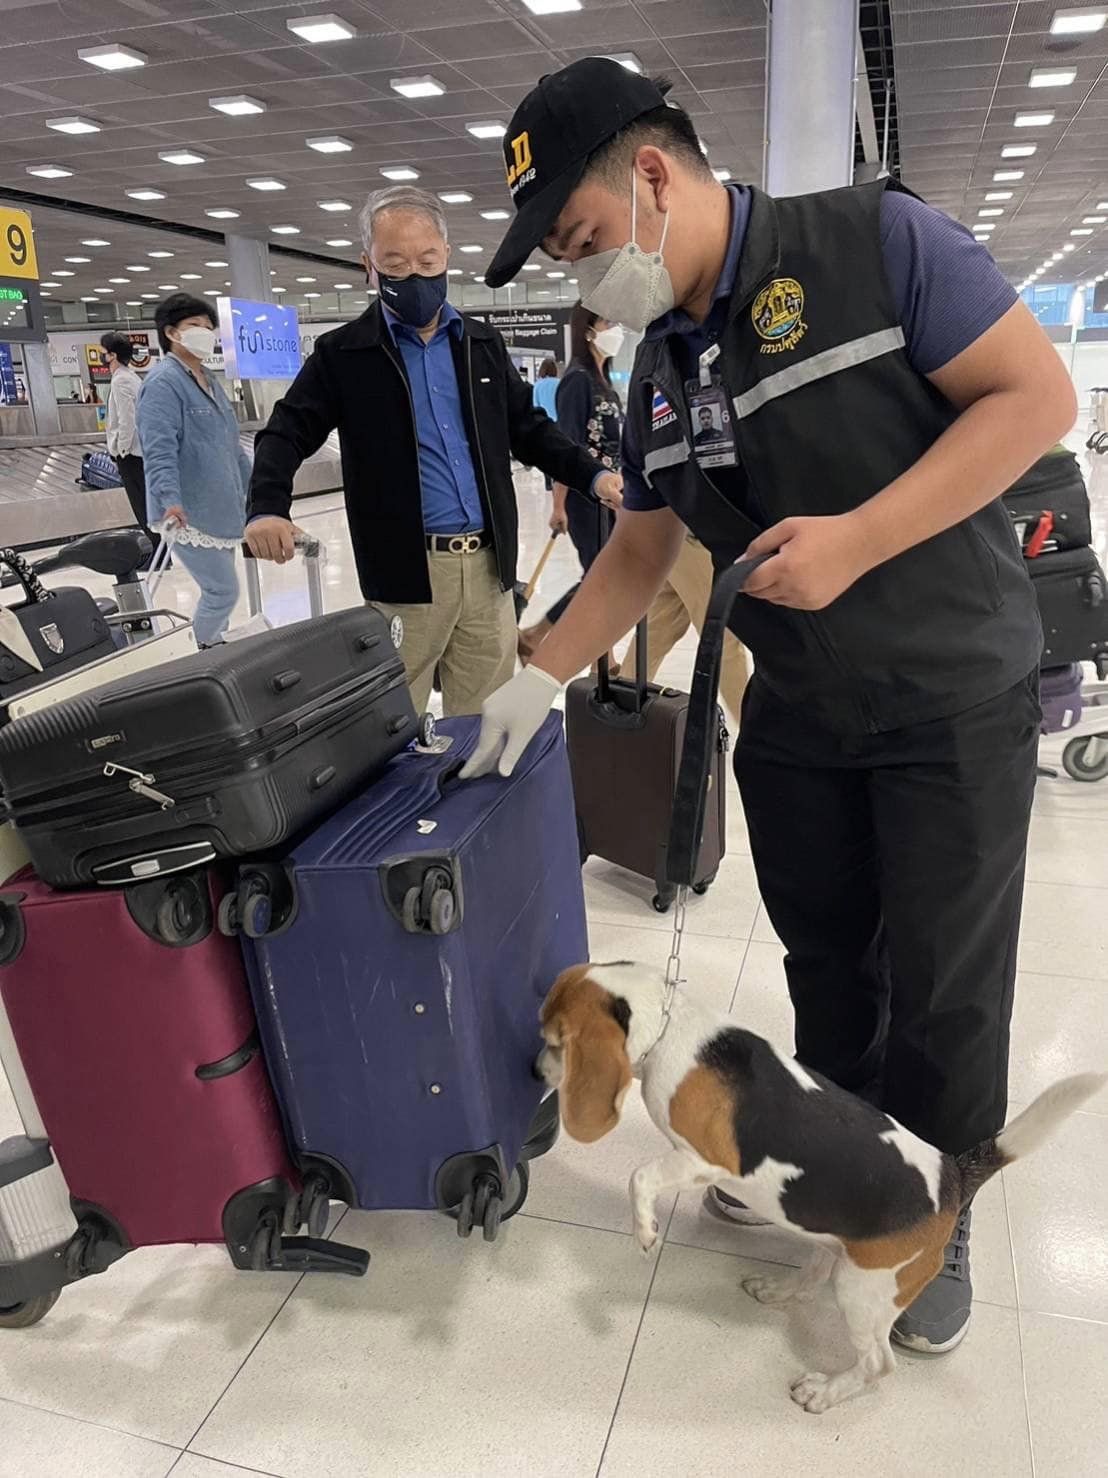 dog sniffing luggage